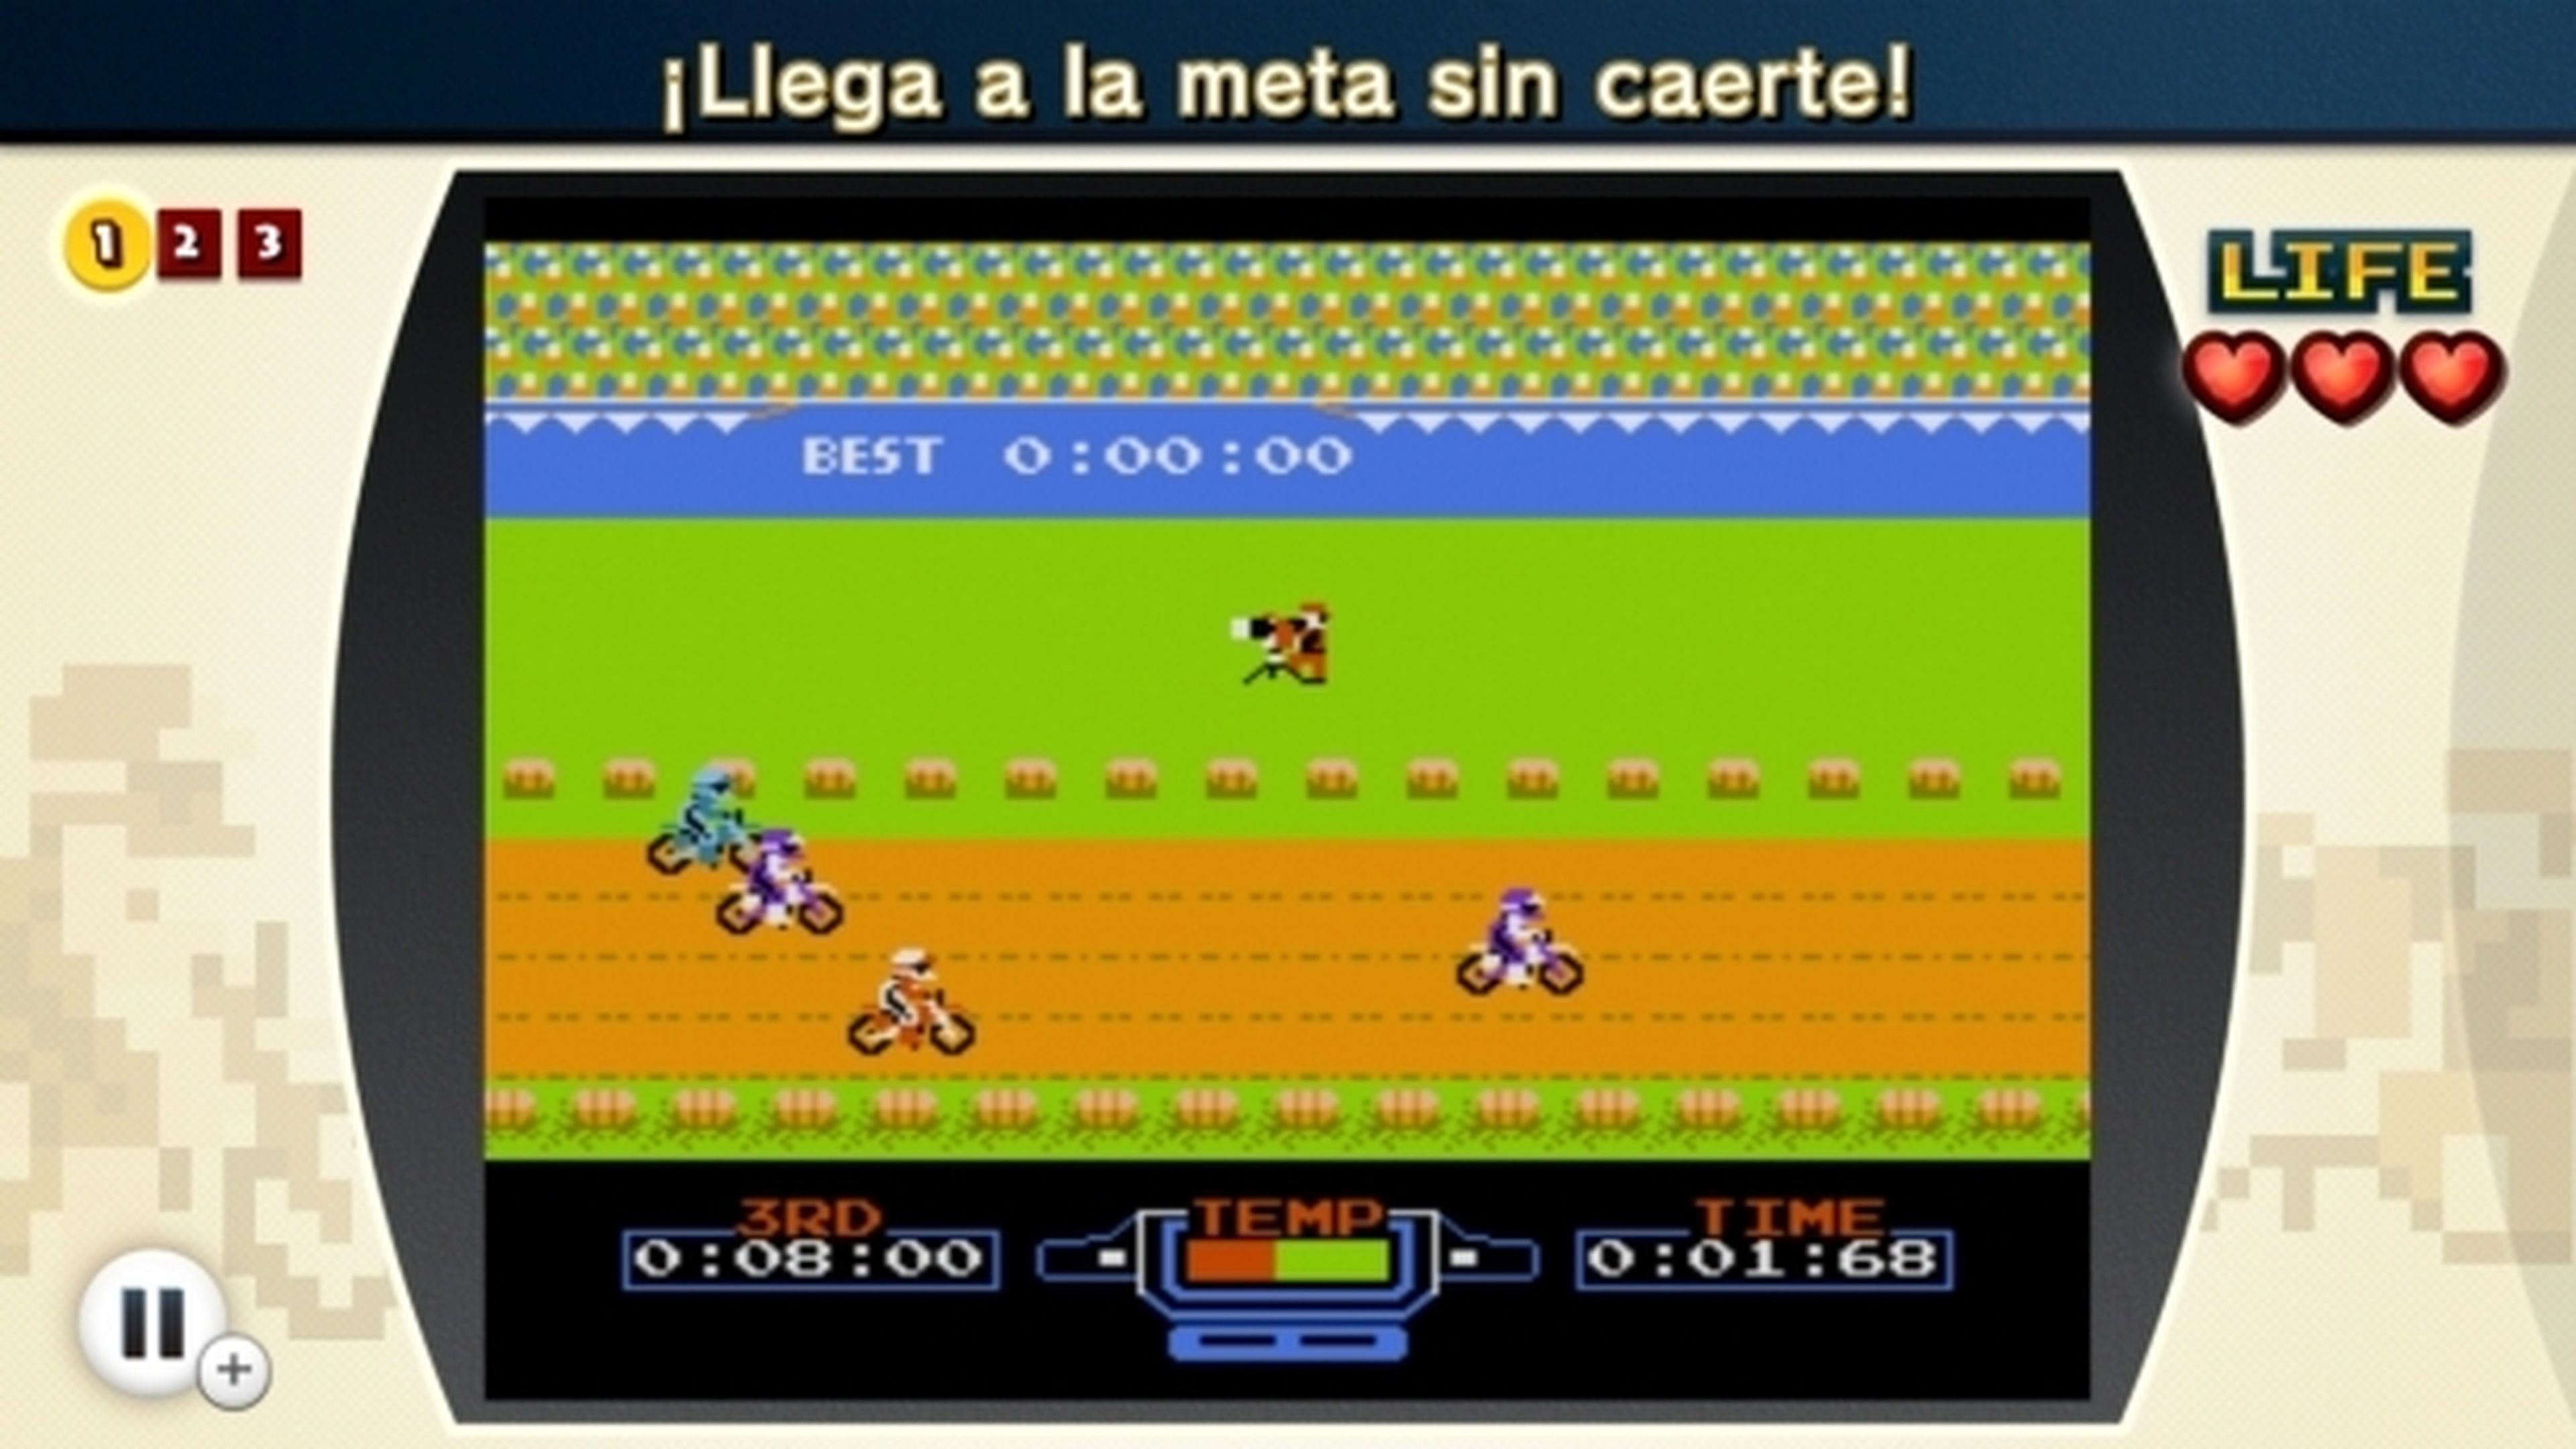 Análisis de NES Remix